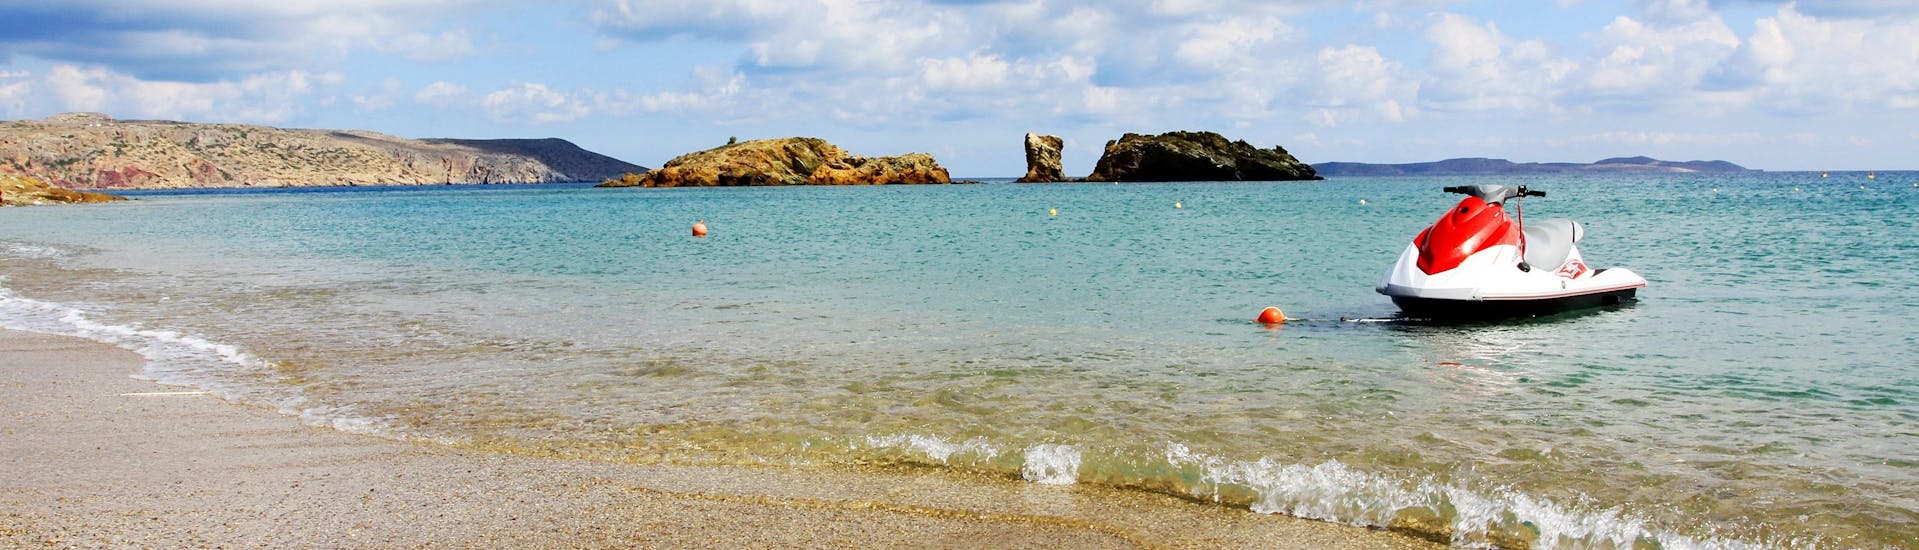 Ein Jetski an einem Strand auf Kreta, wo viele Wassersportaktivitäten stattfinden.